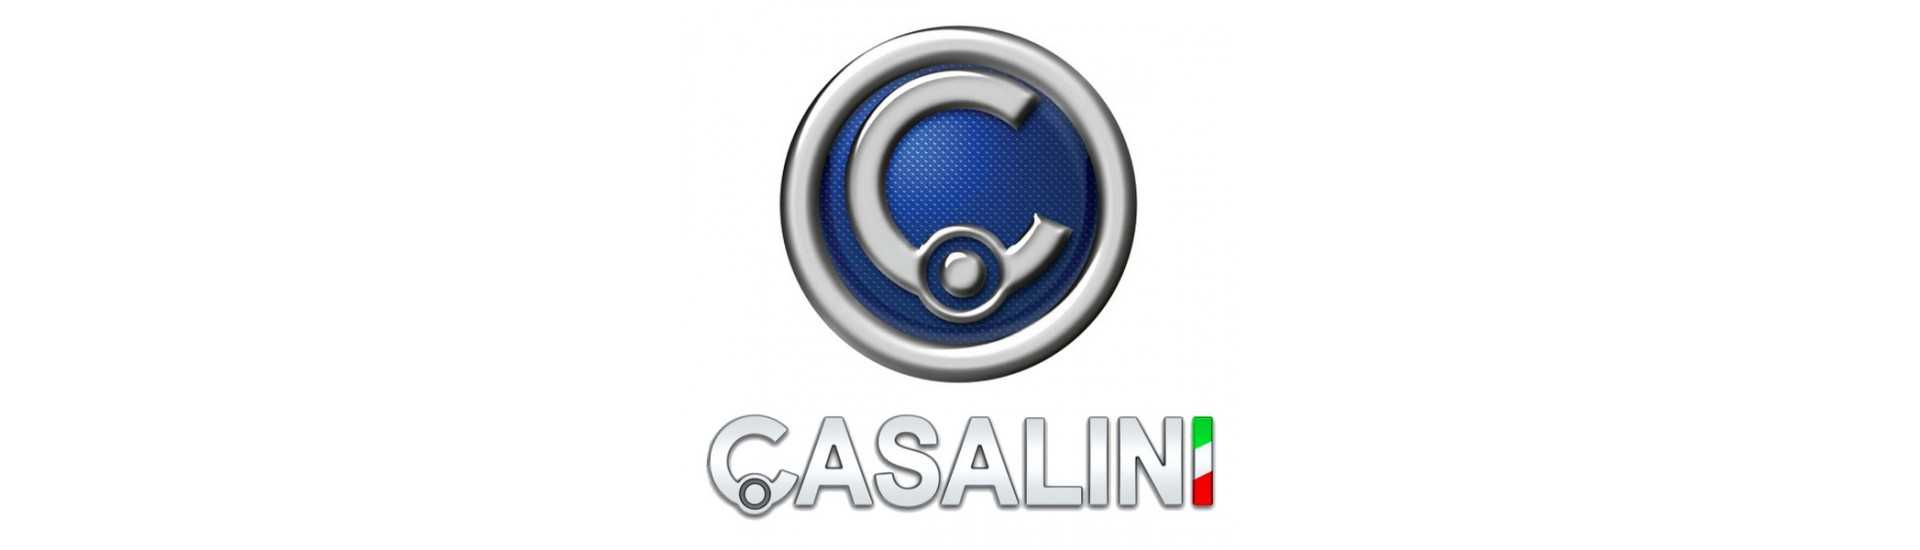 Pièces occasion Casalini au meilleur prix